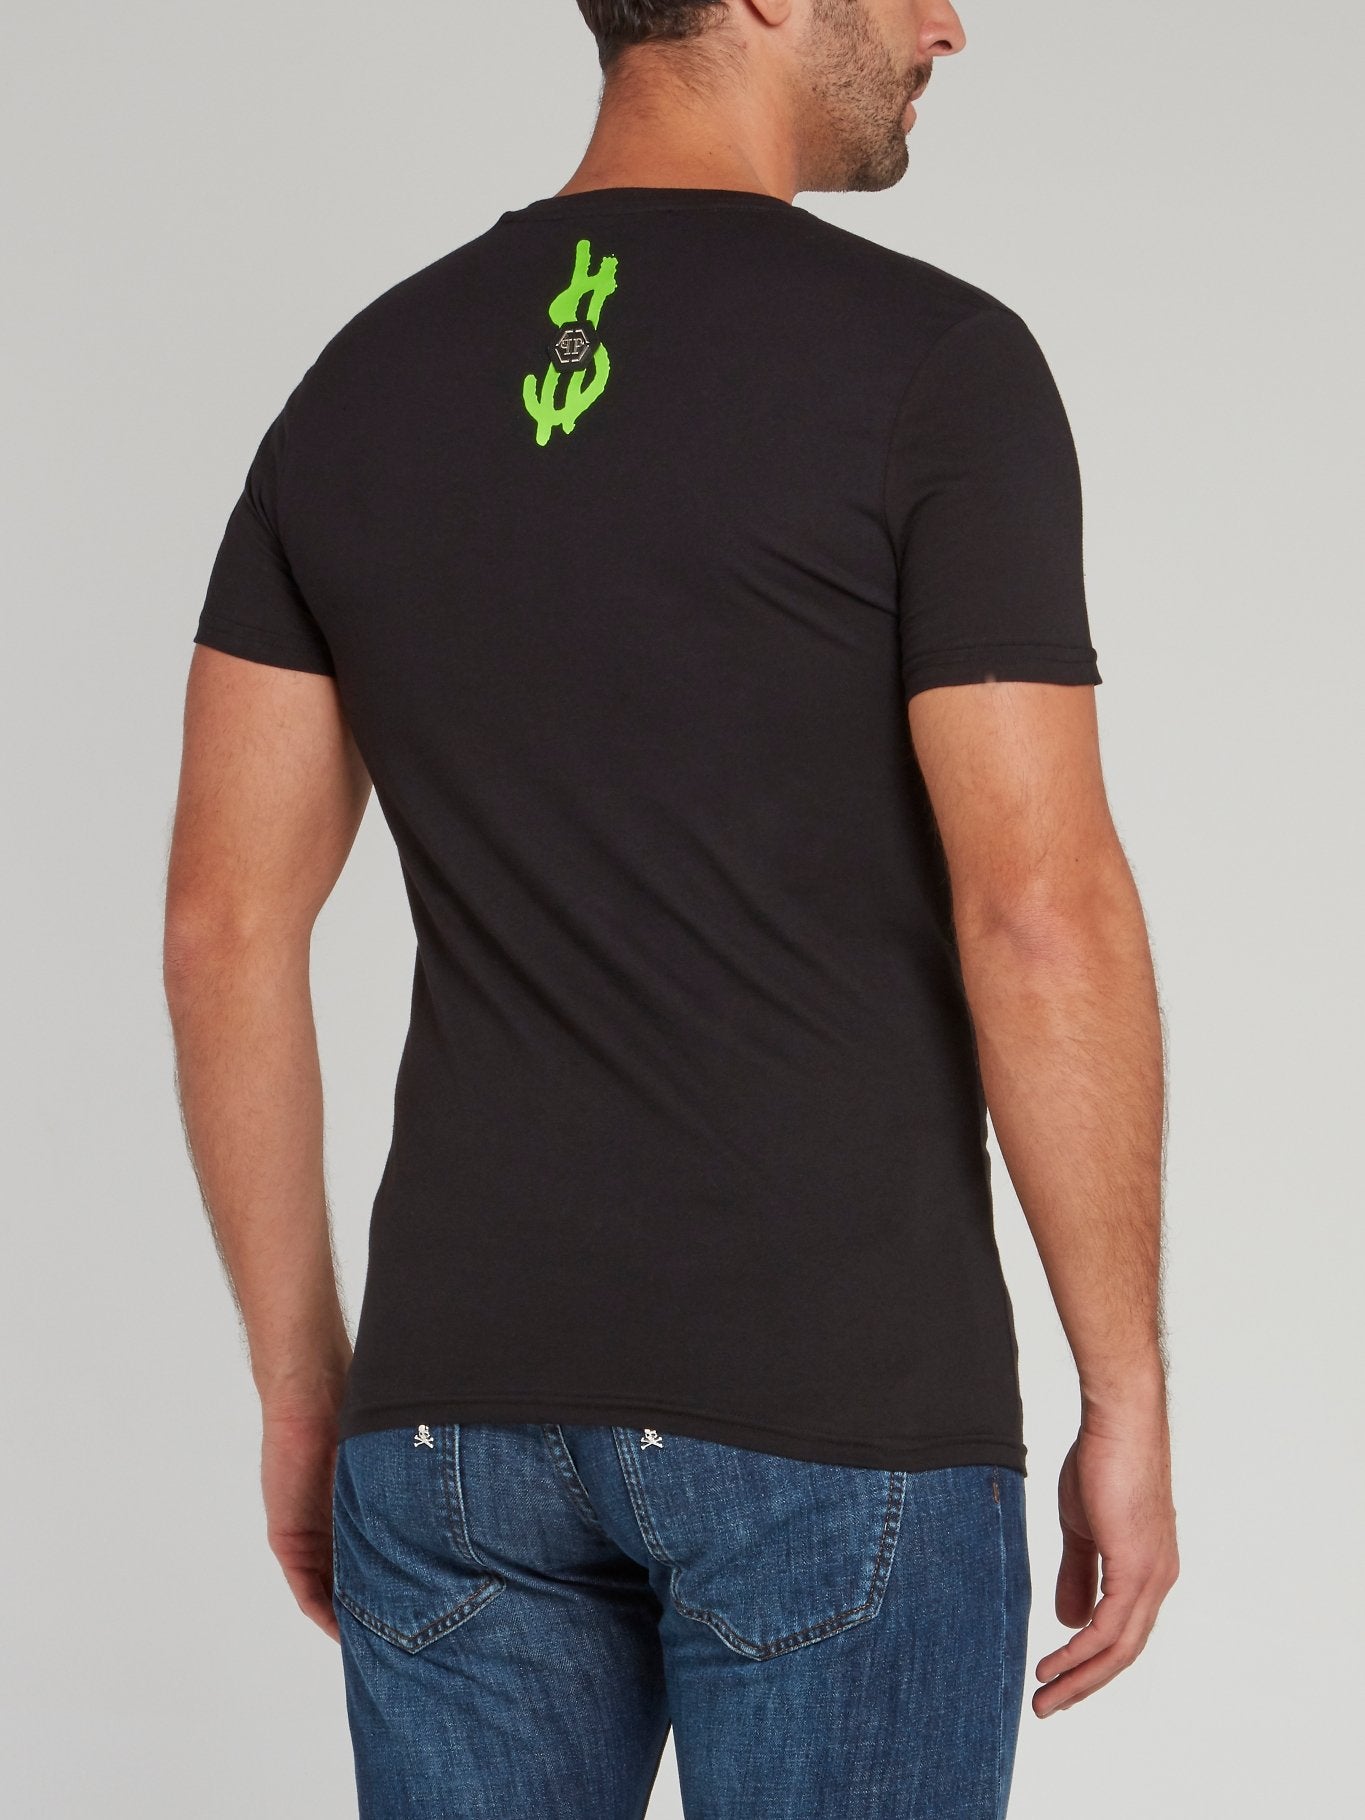 Черная футболка с V-образным вырезом, надписью и черепом